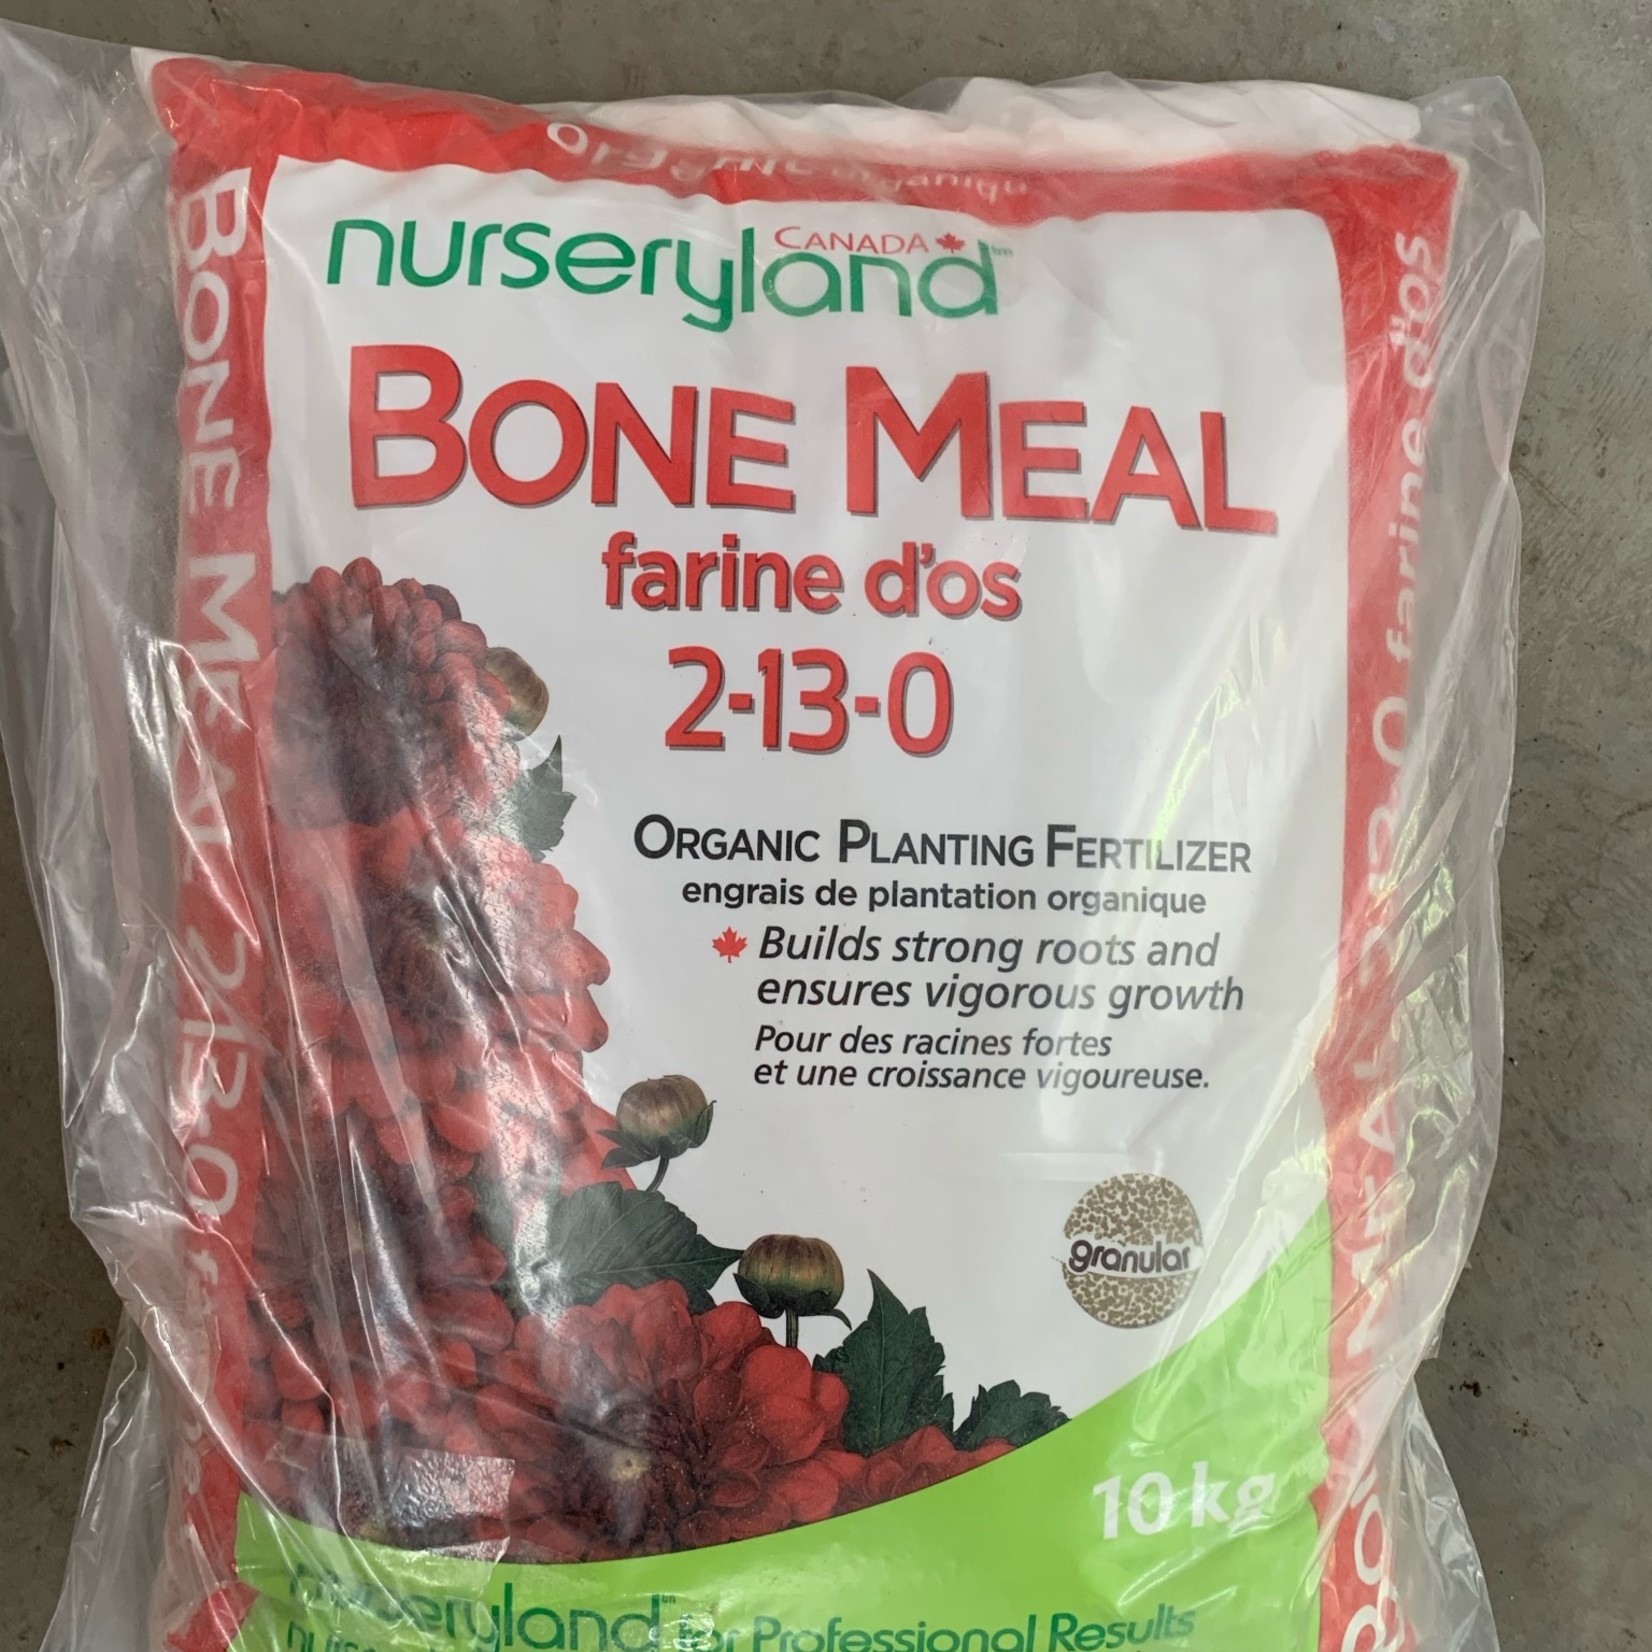 Nurseryland Bone meal 2-13-0 10kg